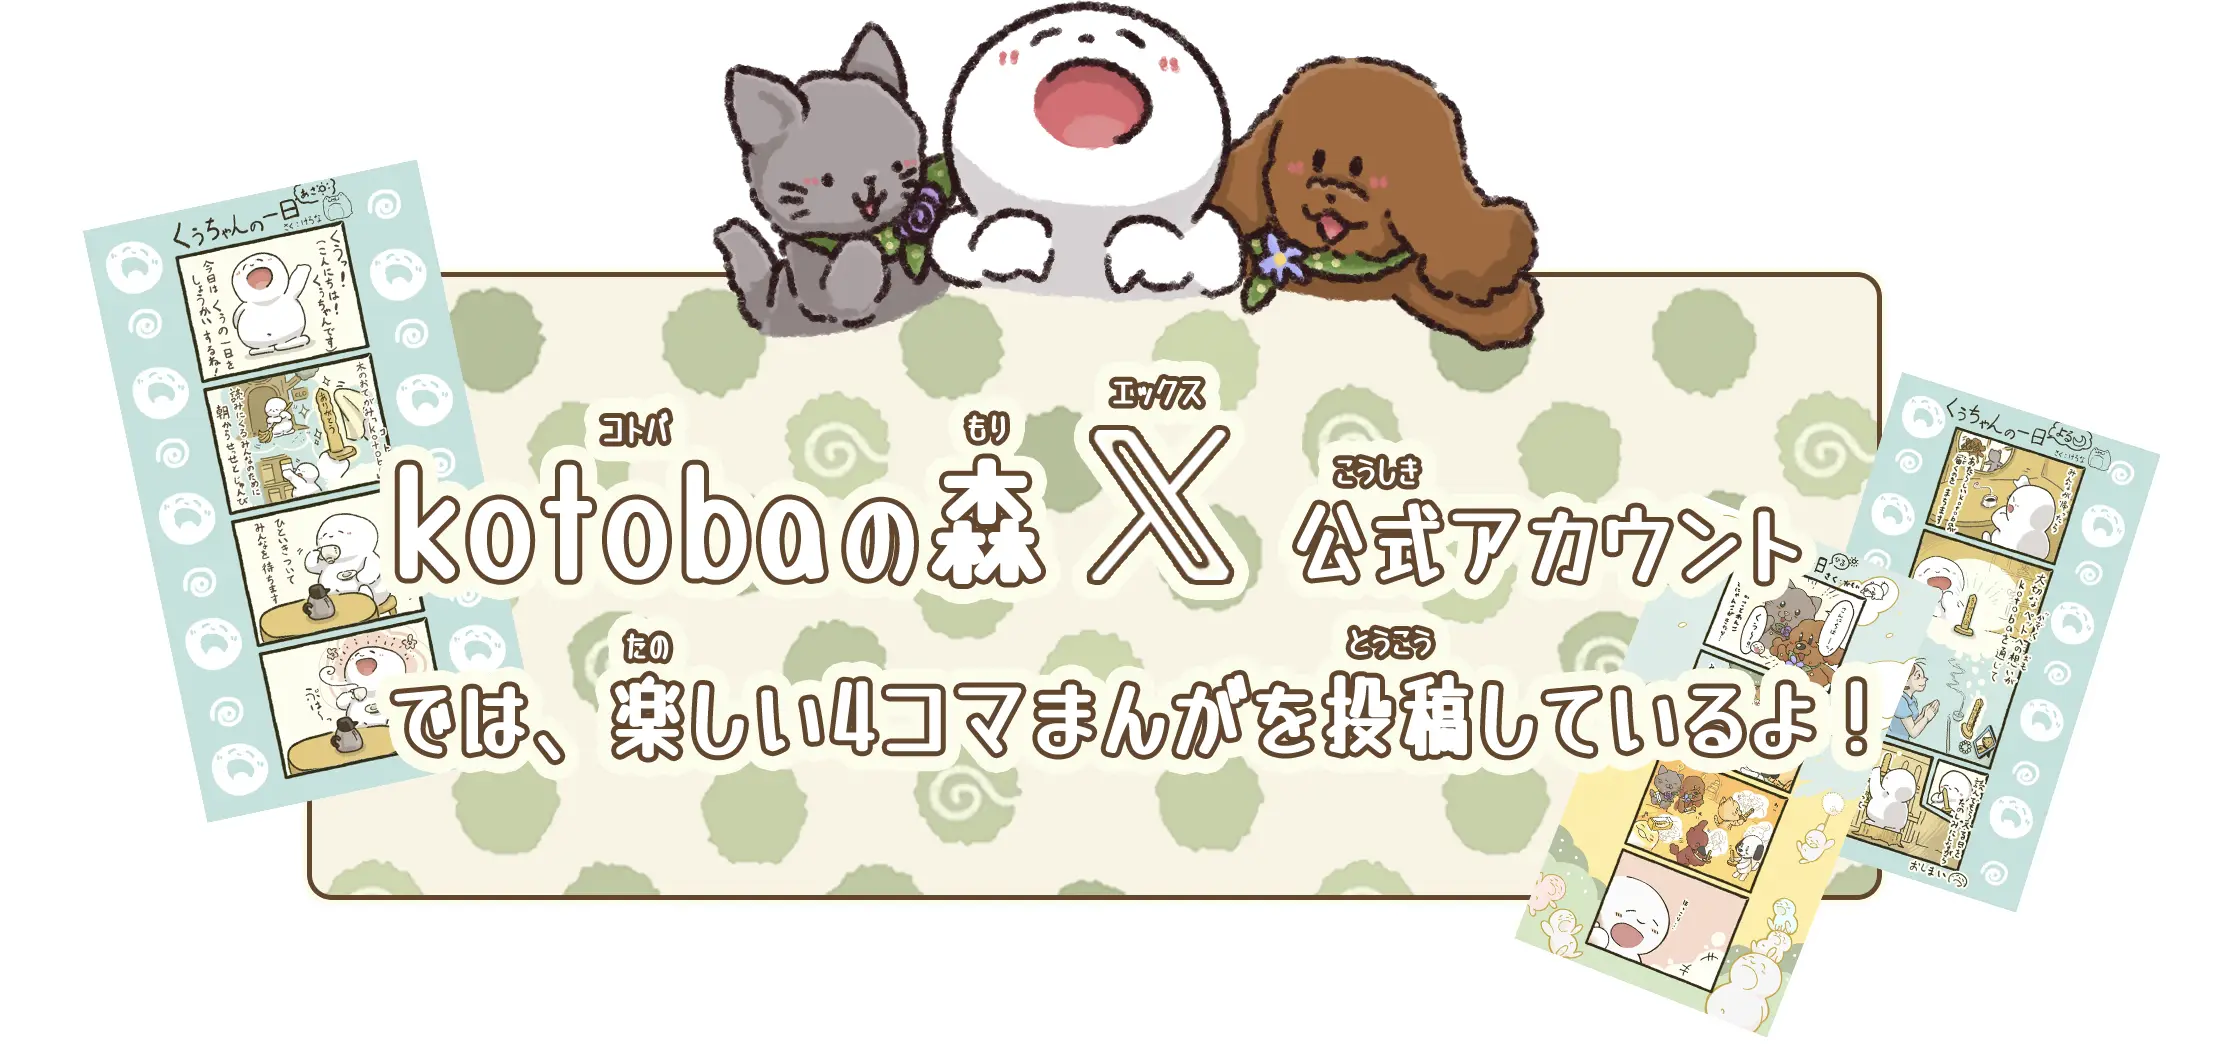 kotobaの森x公式アカウントでは、森の仲間たちの楽しい4コマまんがを投稿しているよ。ぜひ見に来てね!